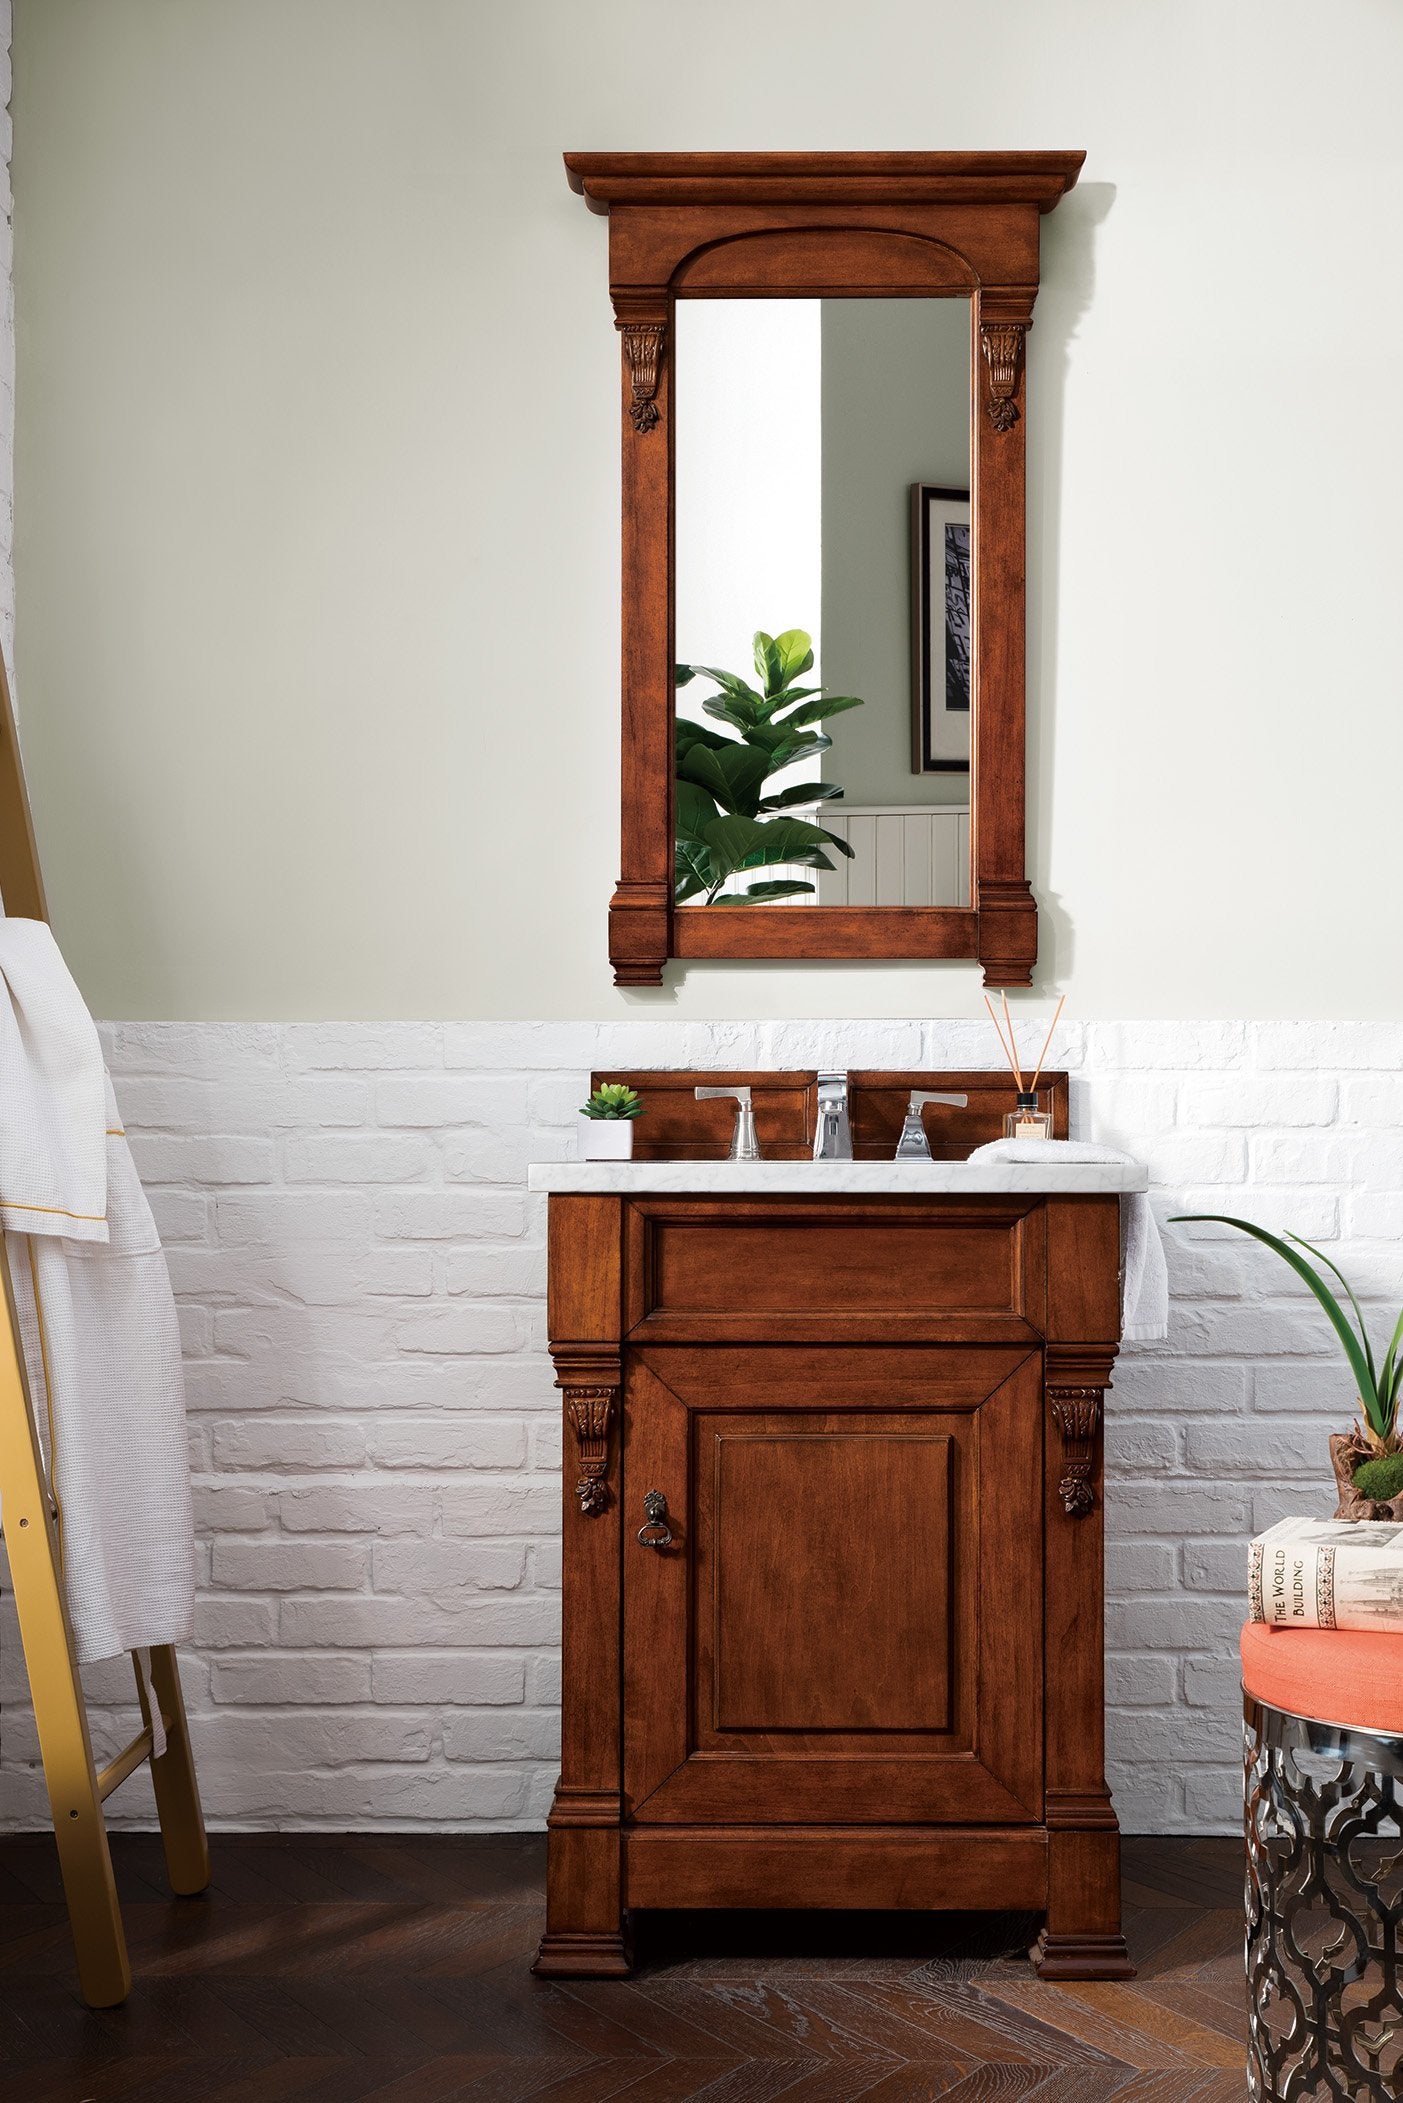 26" Brookfield Warm Cherry Single Bathroom Vanity, James Martin Vanities - vanitiesdepot.com